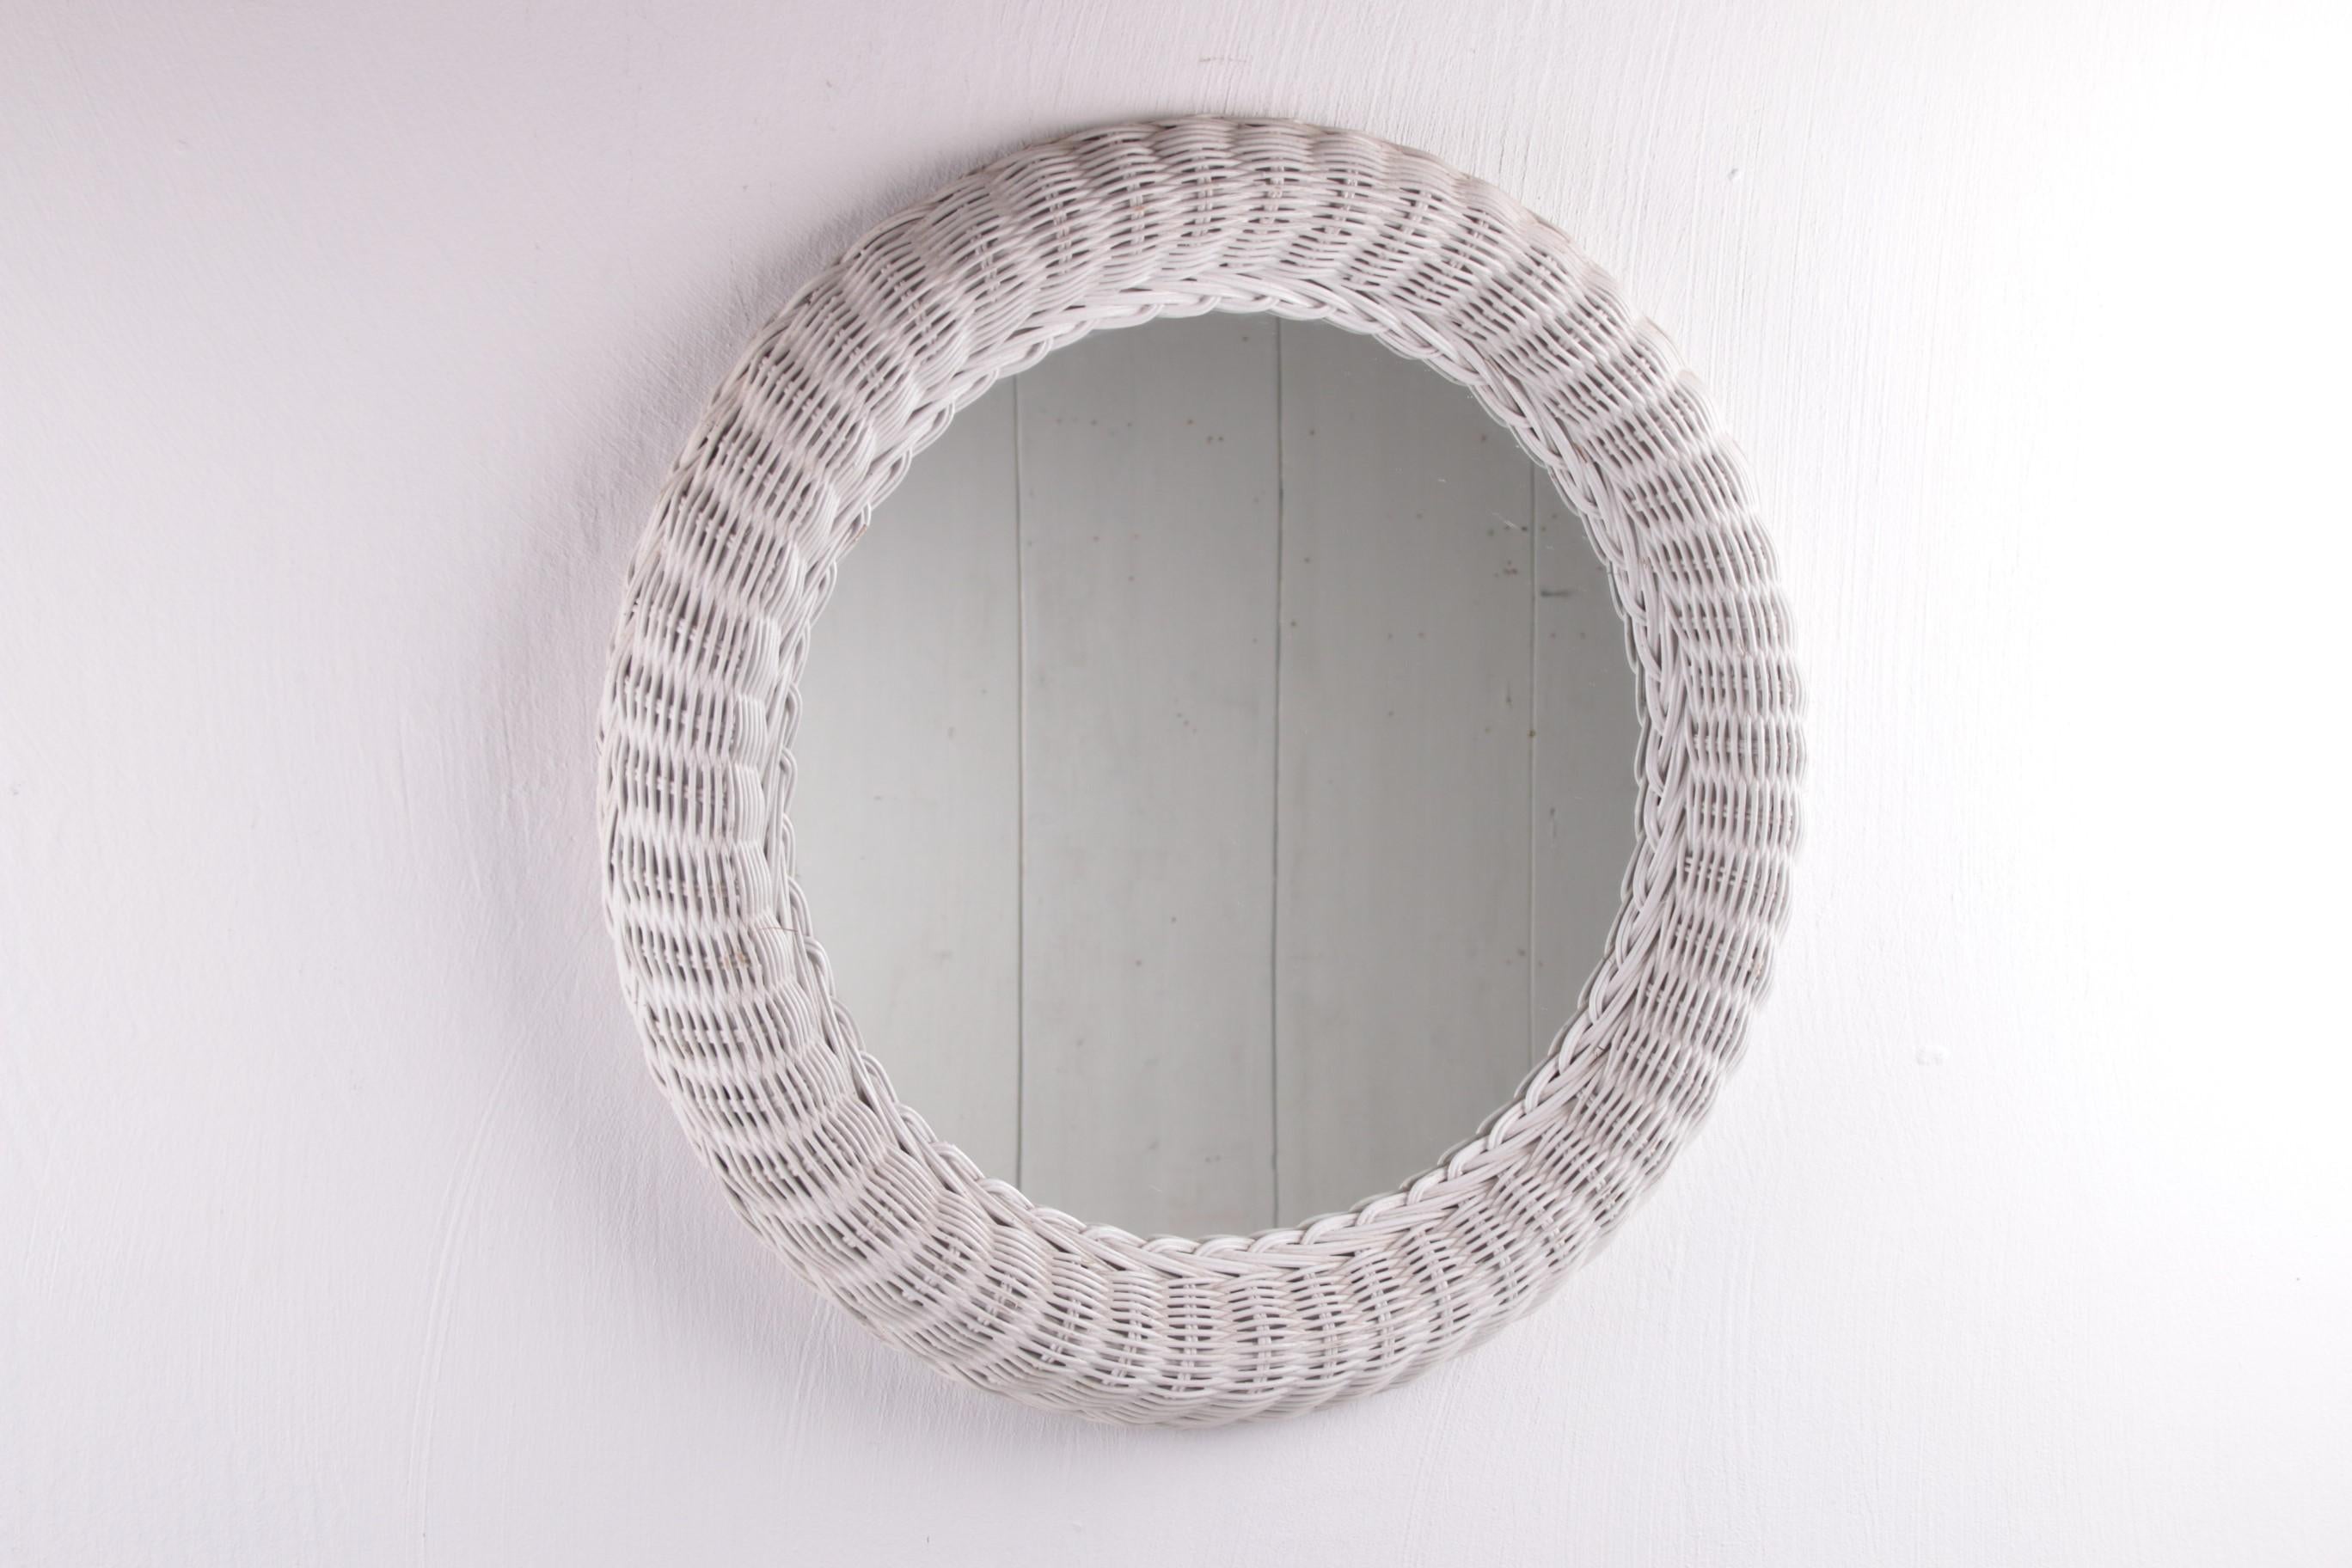 Skandinavischer runder Rattanspiegel weiß.


Dies ist ein schöner Spiegel aus weiß gefärbtem Rattan.

Der Spiegel wurde wahrscheinlich um 1960 in Dänemark hergestellt. Er hat ein schönes, lebendiges Aussehen und passt durch sein schlichtes, rundes